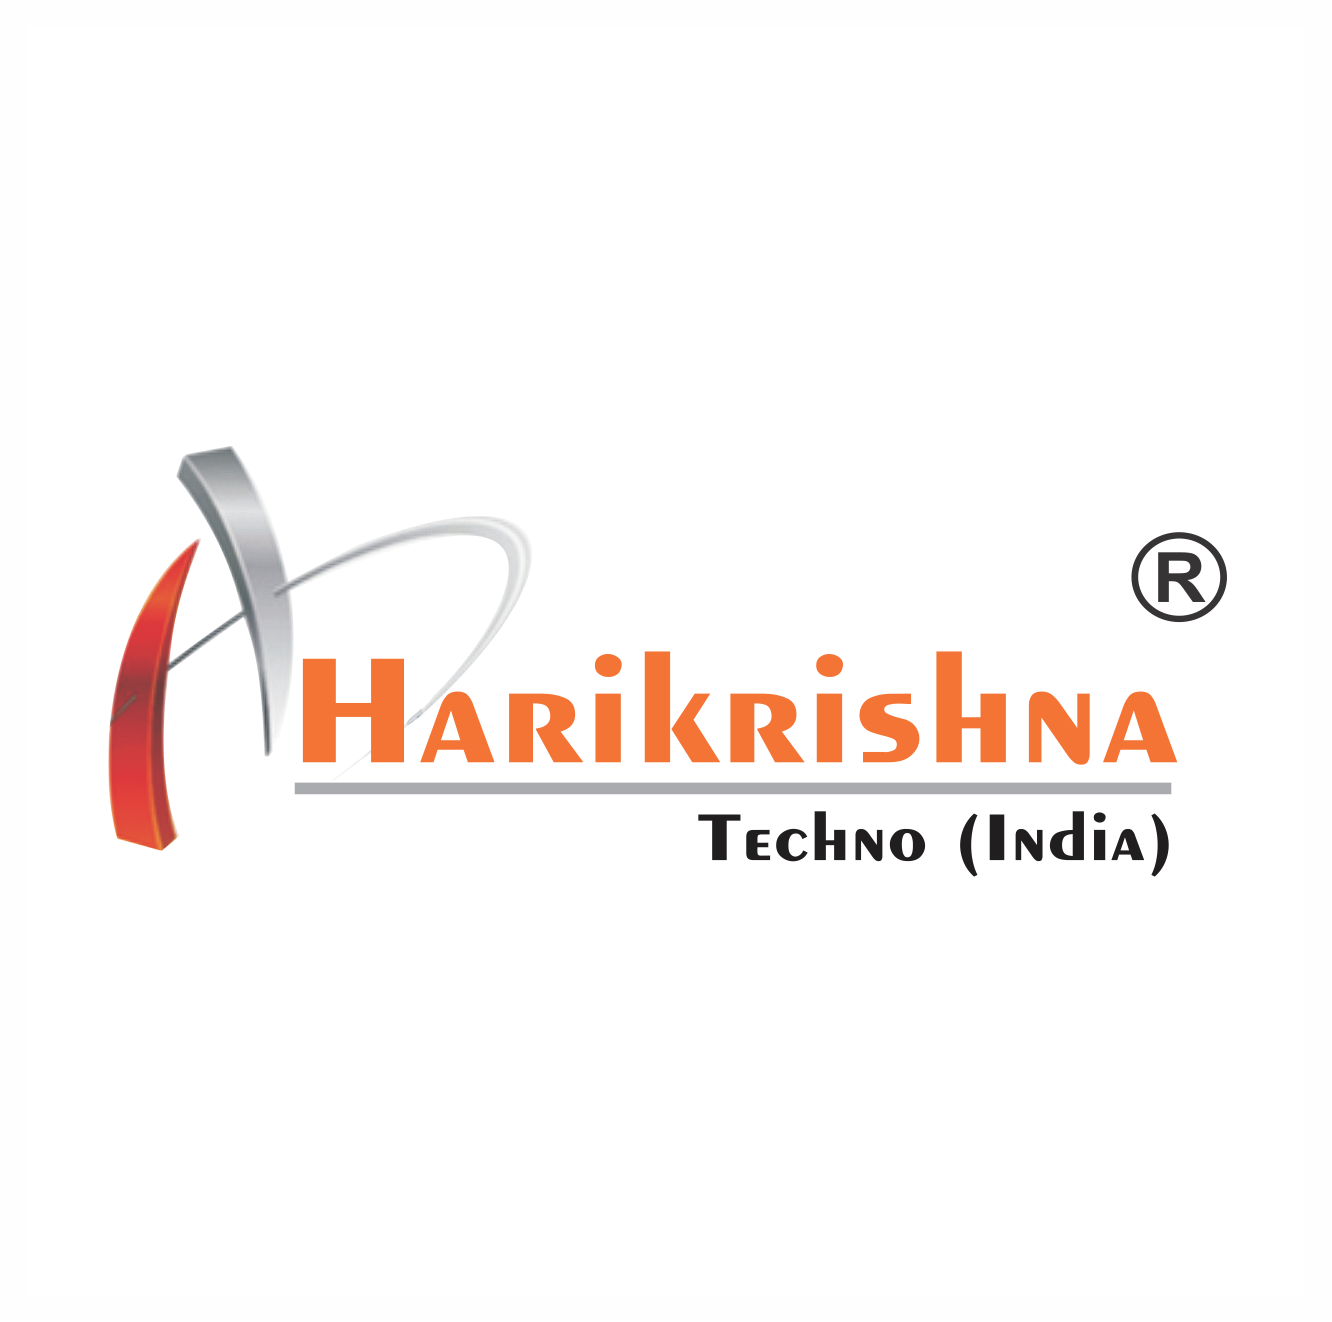 Harikrishna Techno India